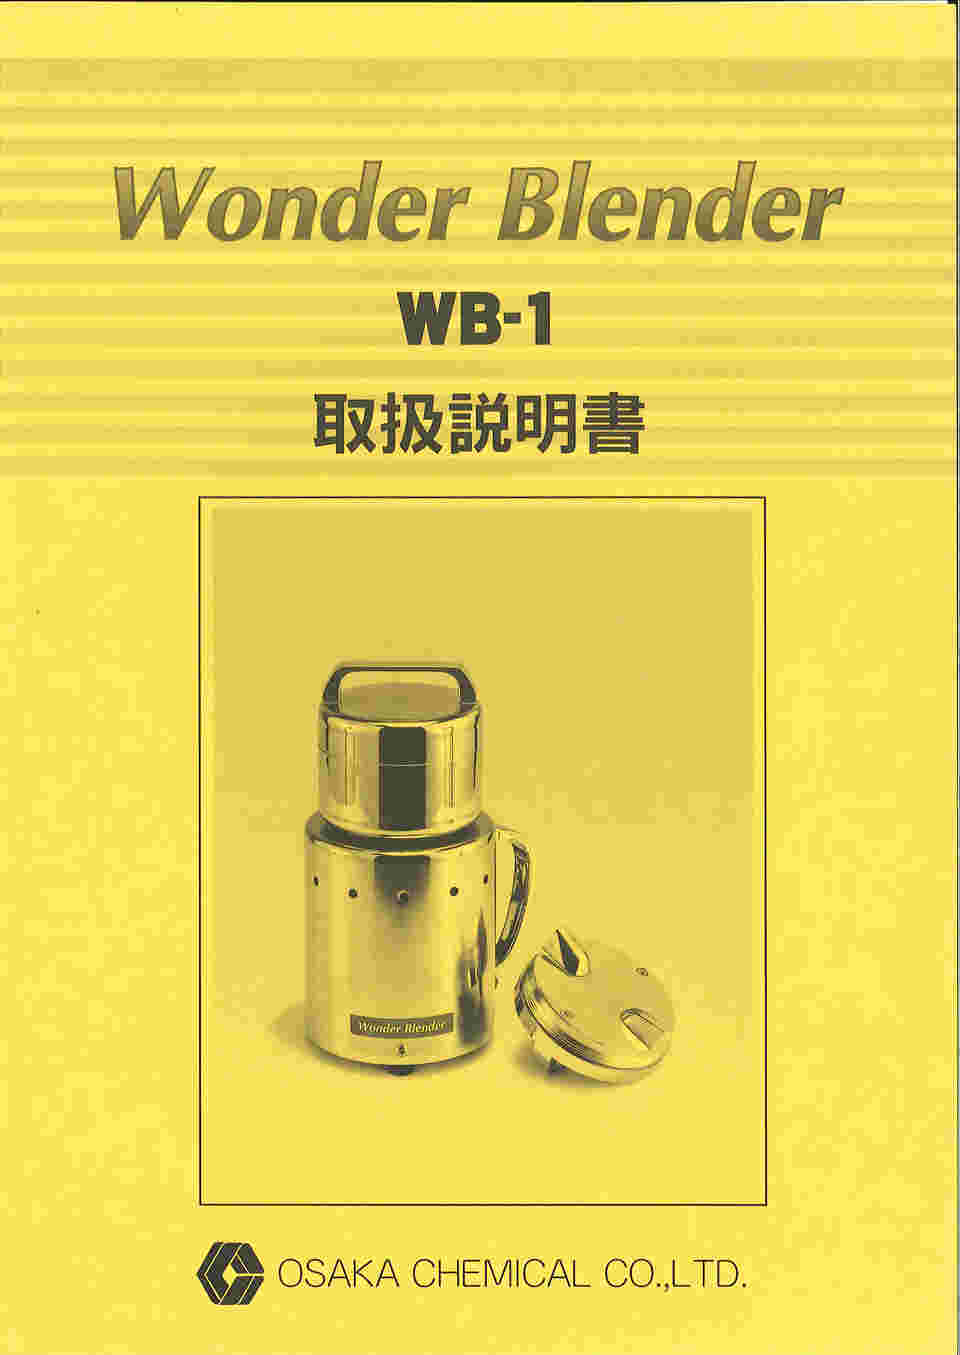 キッチン家電 大阪ケミカル ワンダーブレンダー WB-1 WB1 - 2